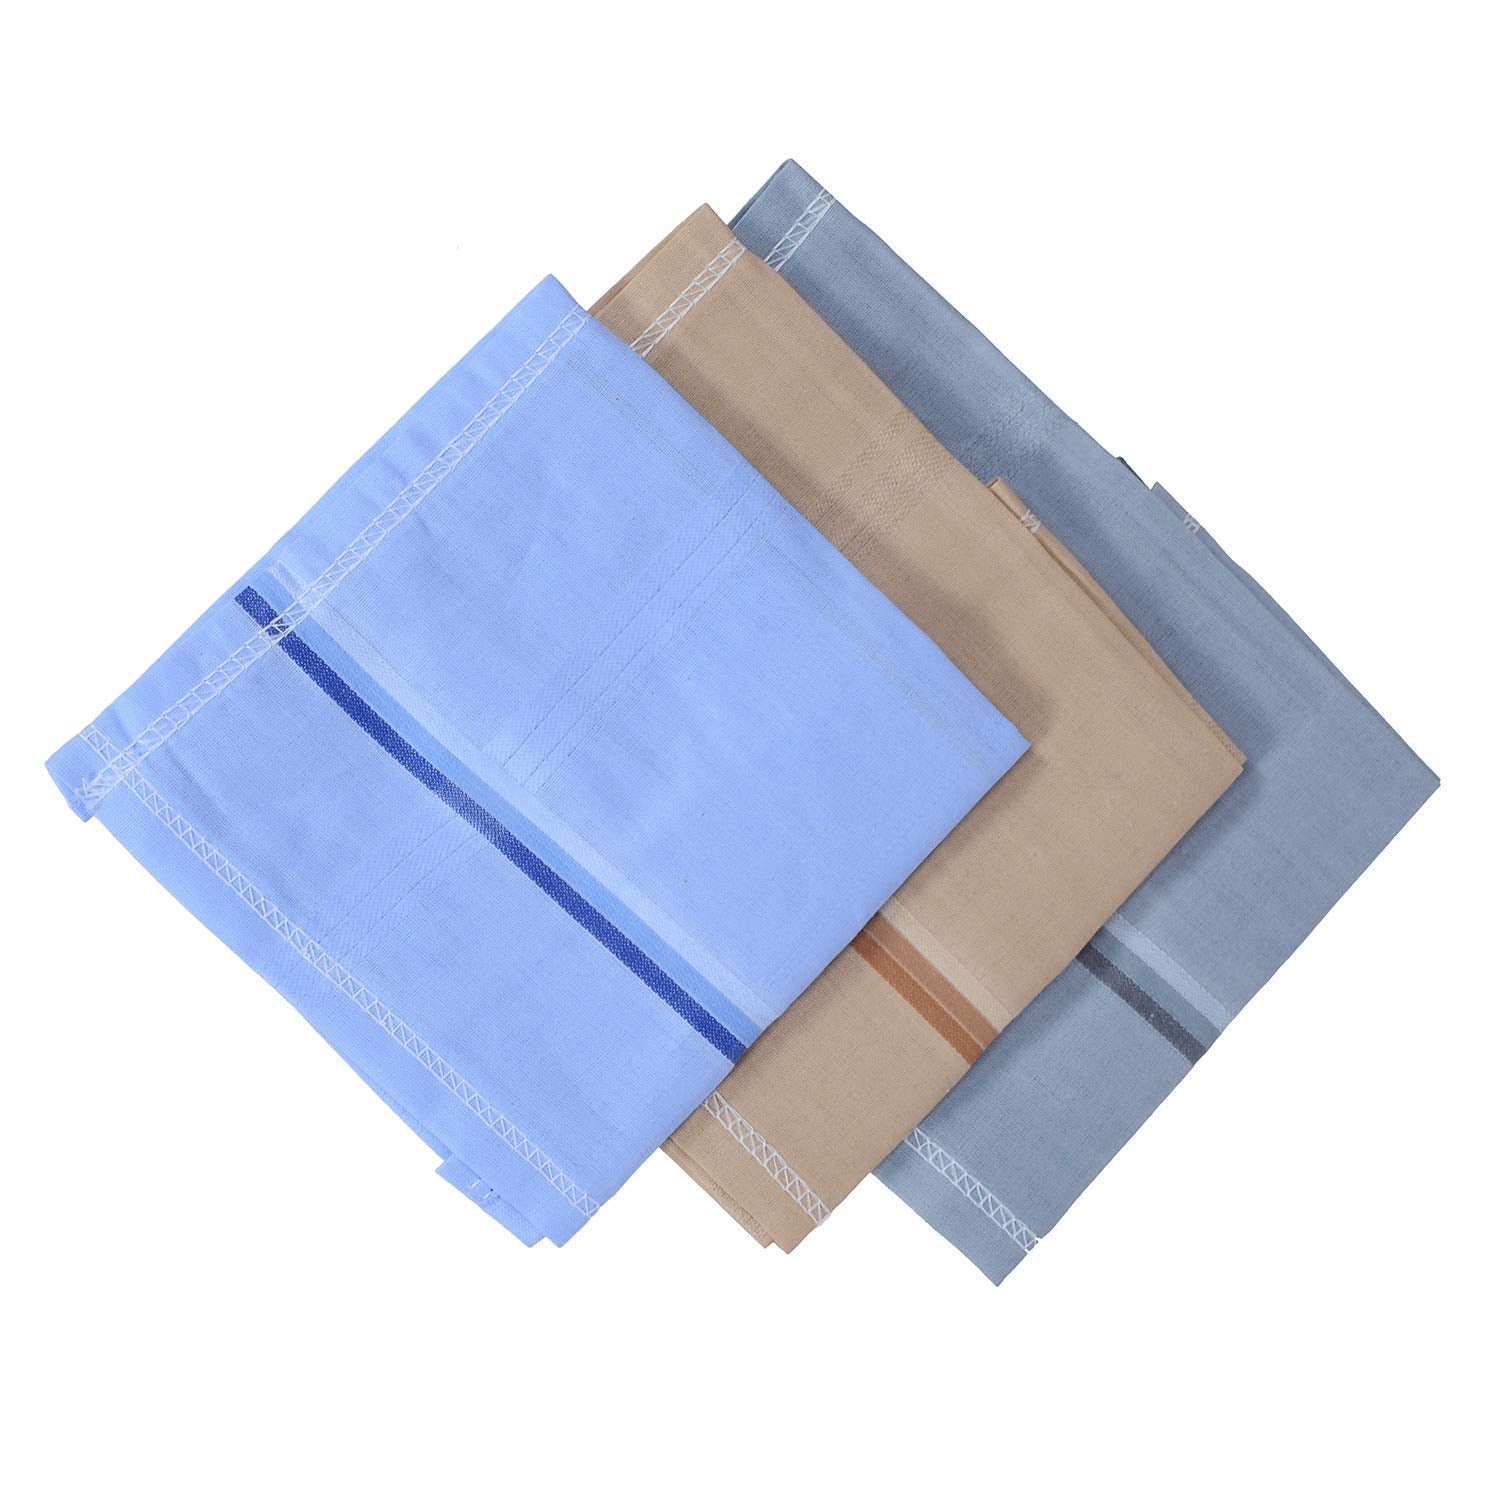 Kuber Industries Men's Cotton Handkerchief (Multicolor) -Pack of 6